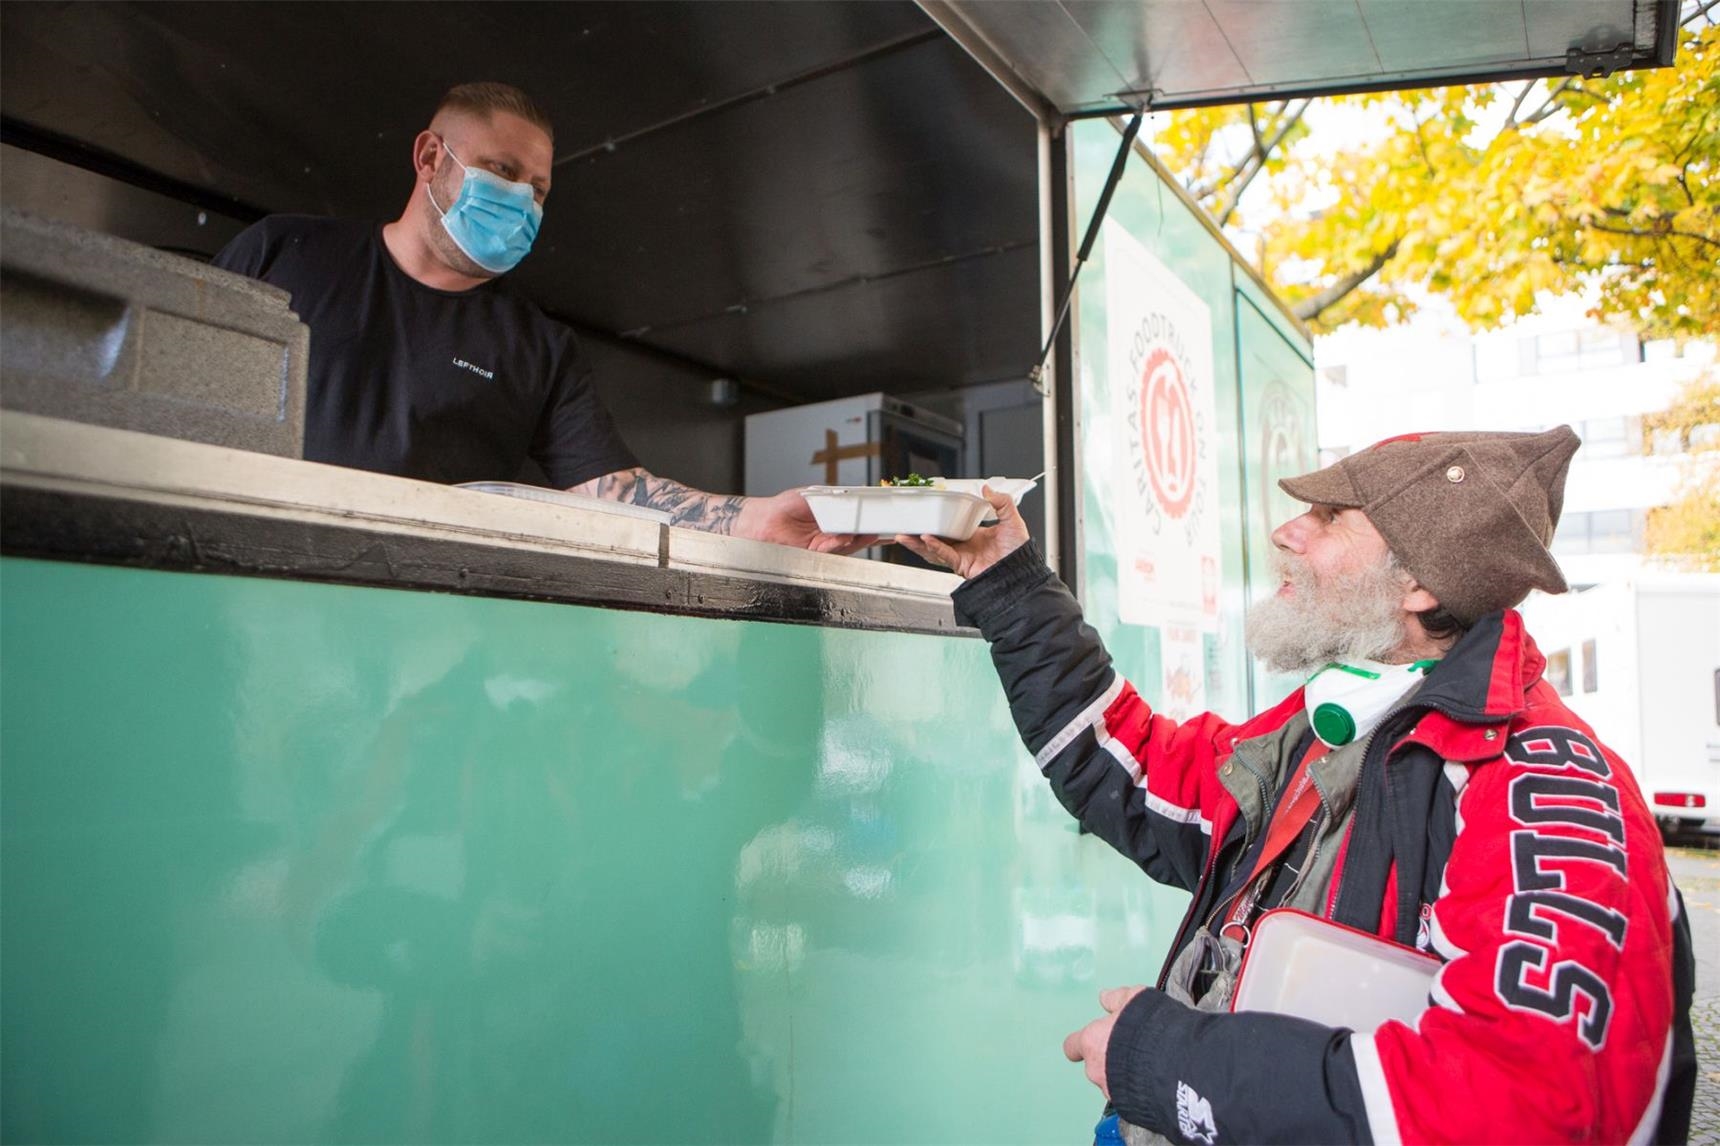 Der Foodtruck der Caritas Berlin verteilt kostenlose, warme Mahlzeiten - auch in Pandemie-Zeiten.